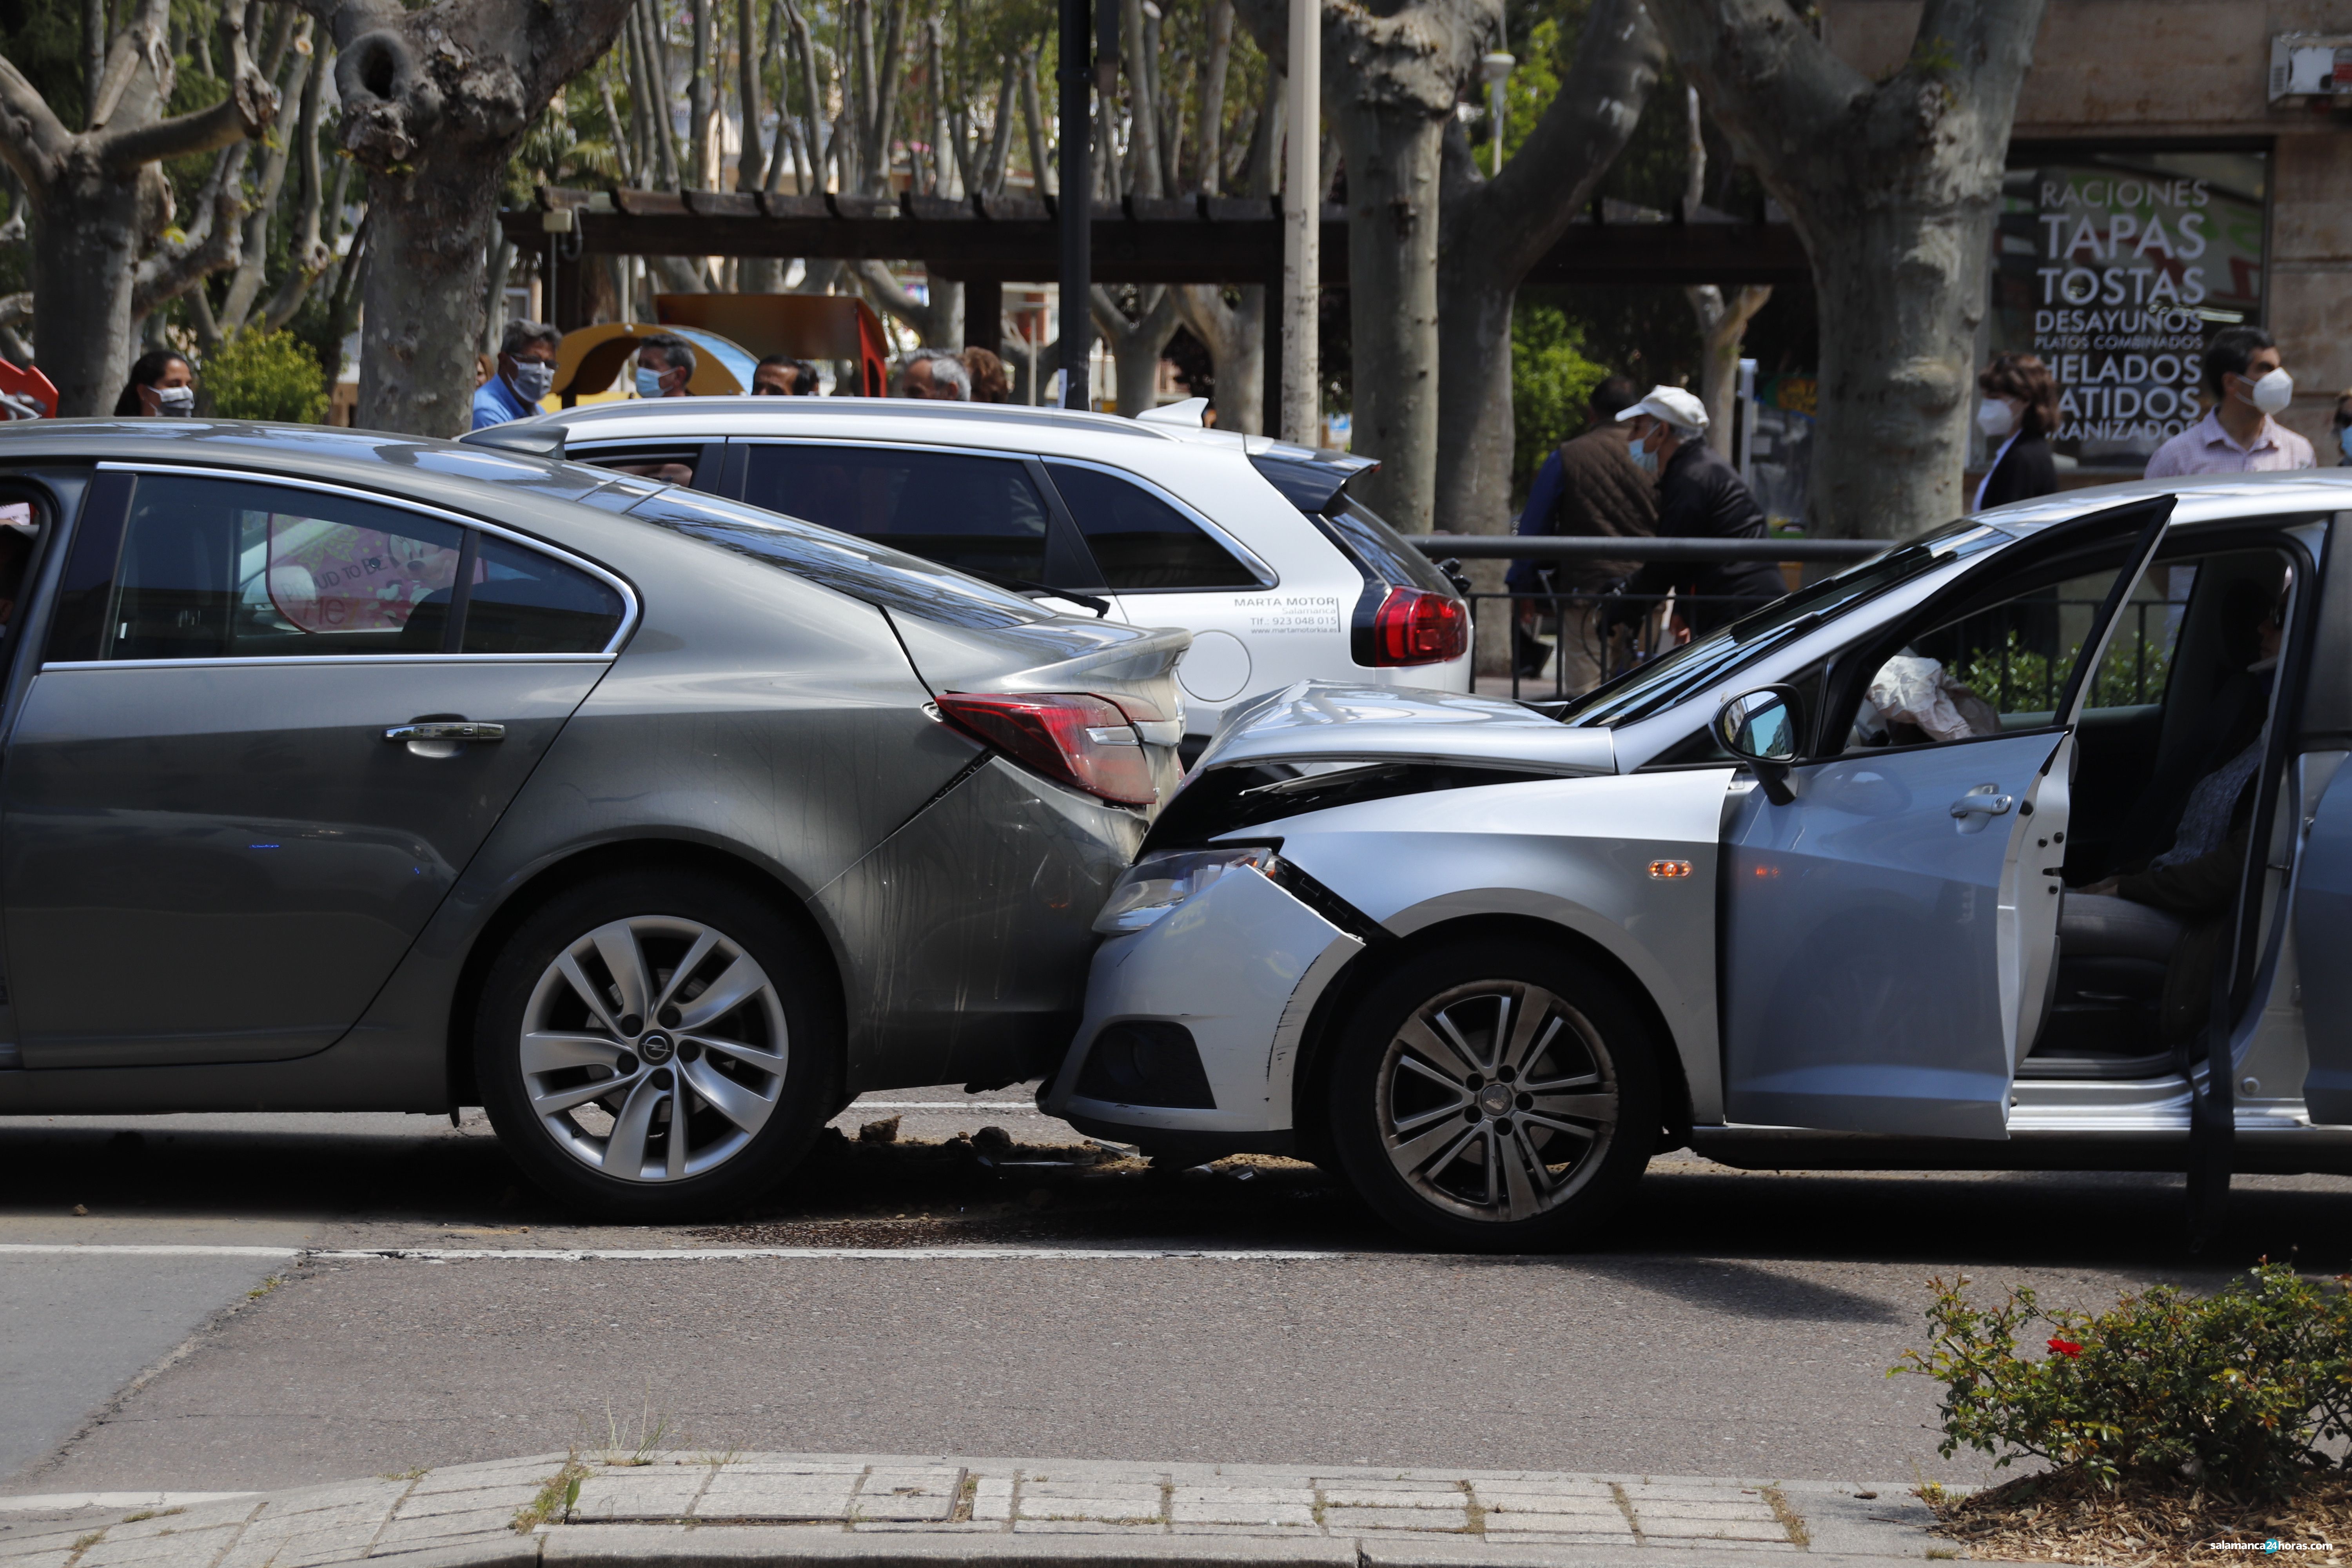 Accidente de tráfico ocurrido en la confluencia de Canalejas con la plaza de España